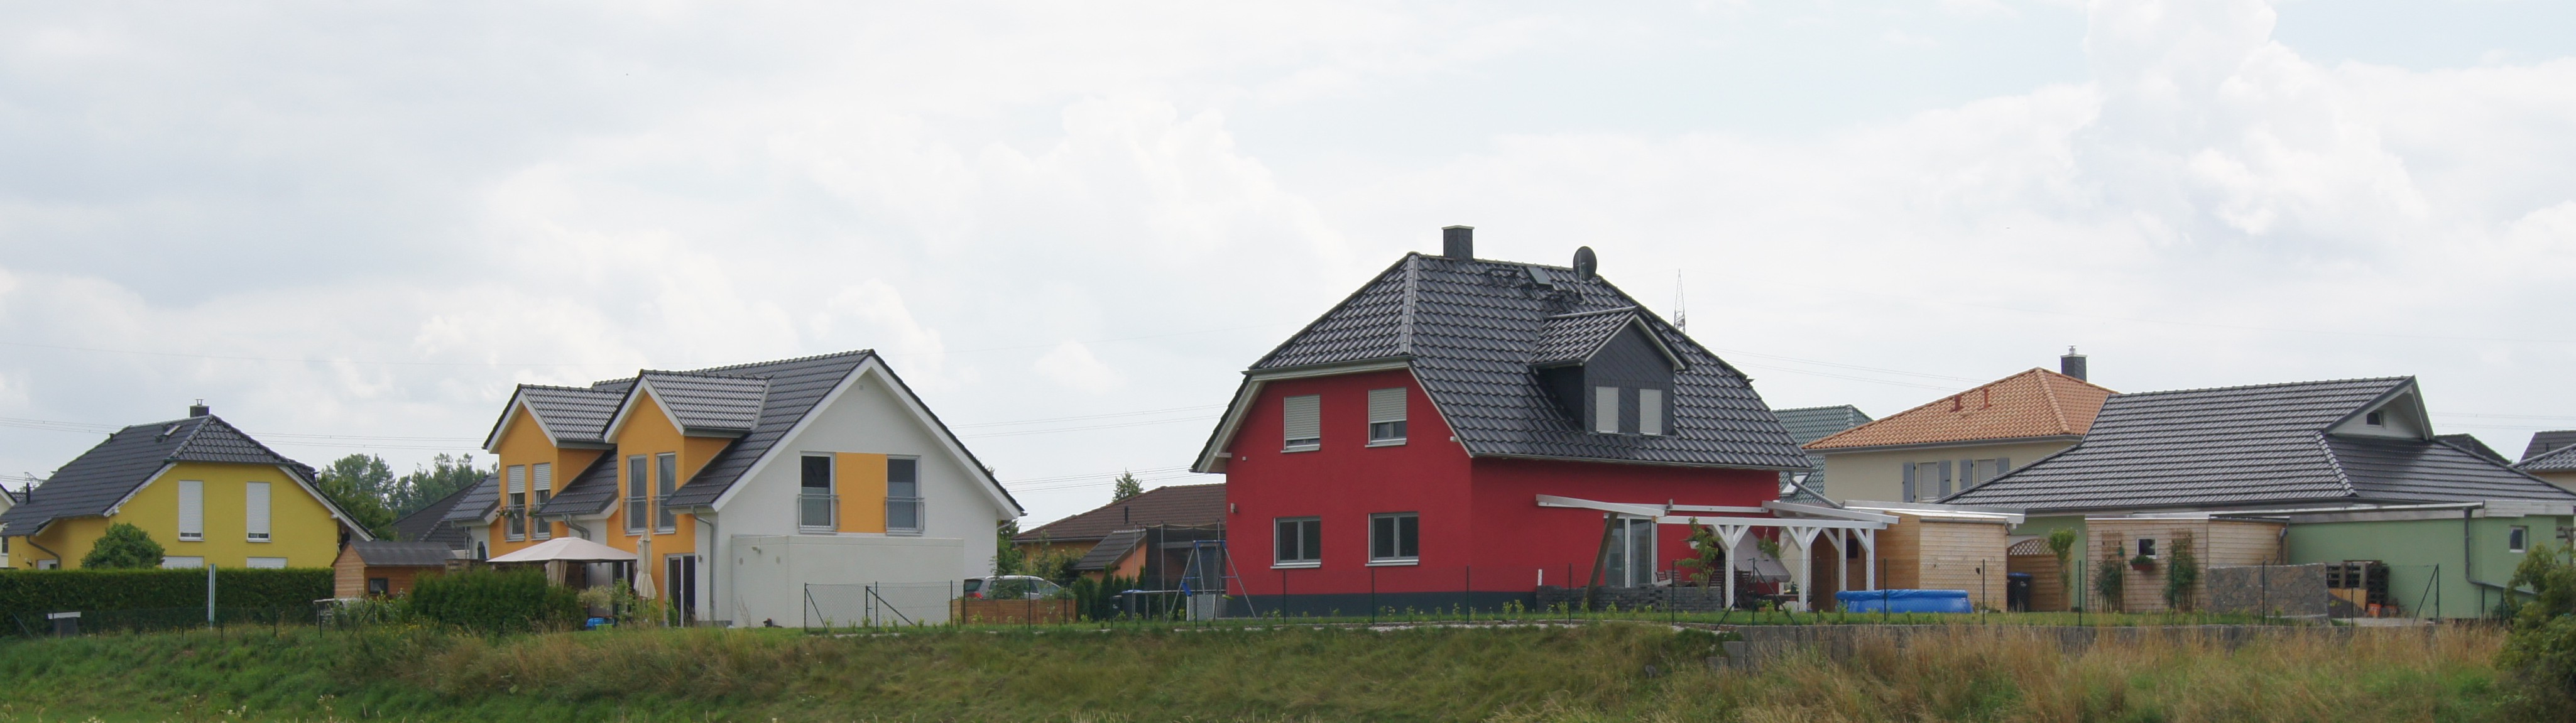 Einfamilienhäuser in Rötha